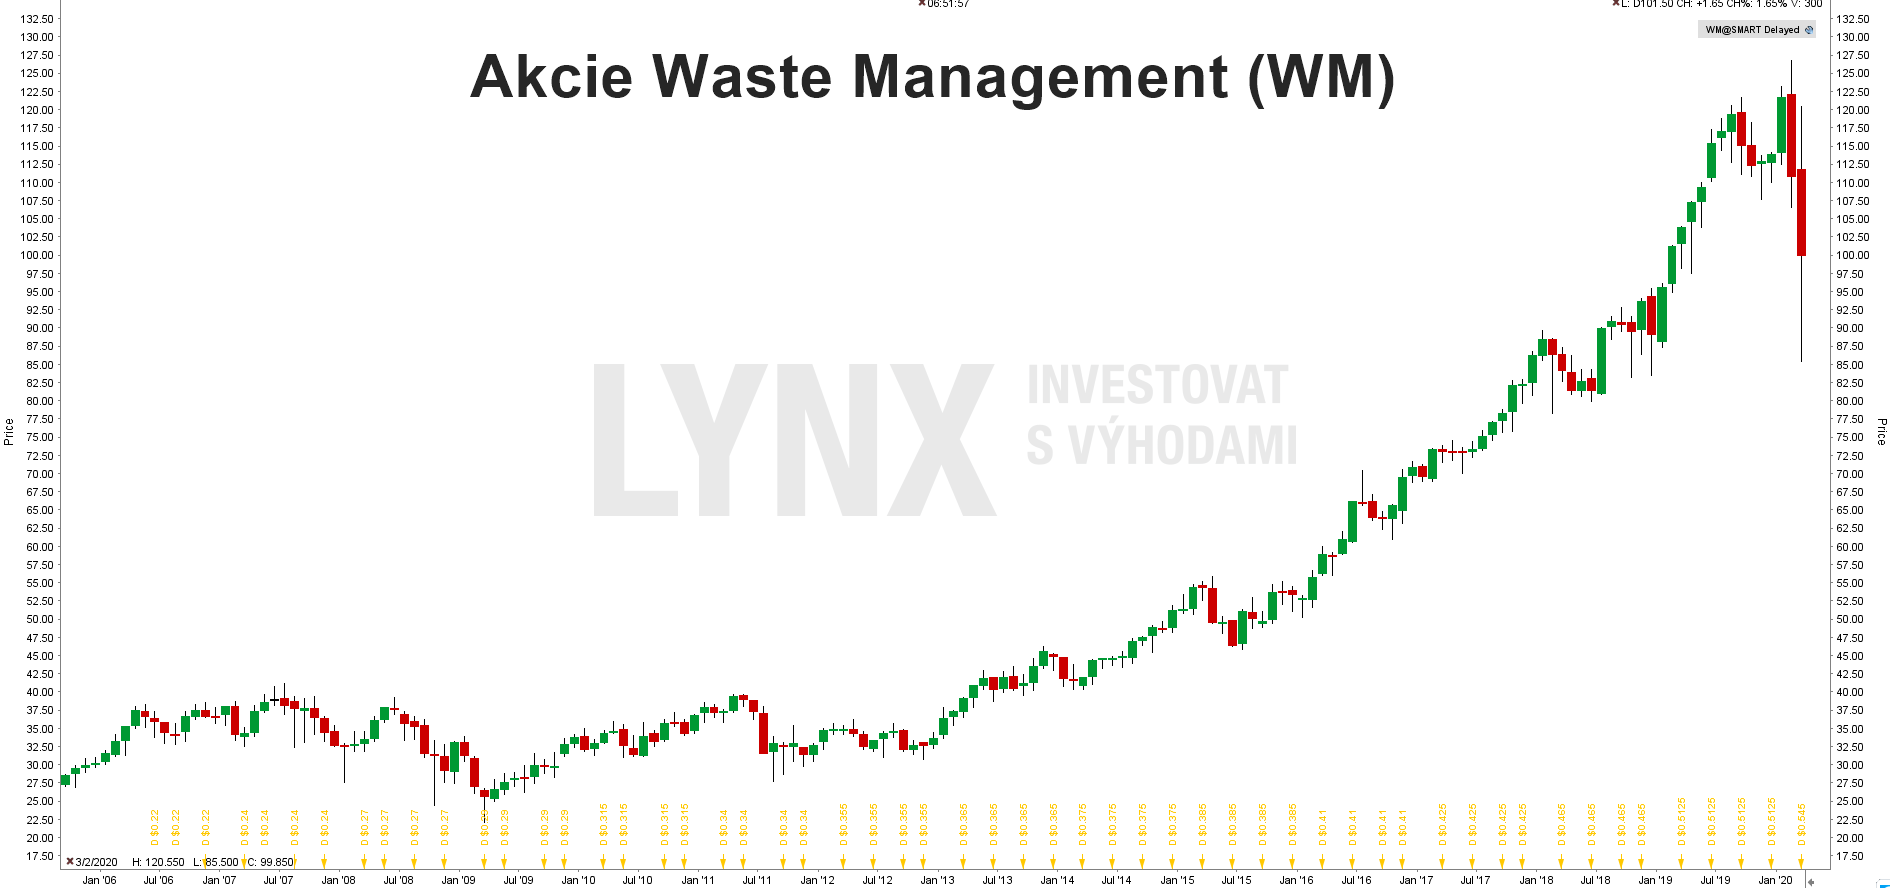 Graf akcie Waste Management